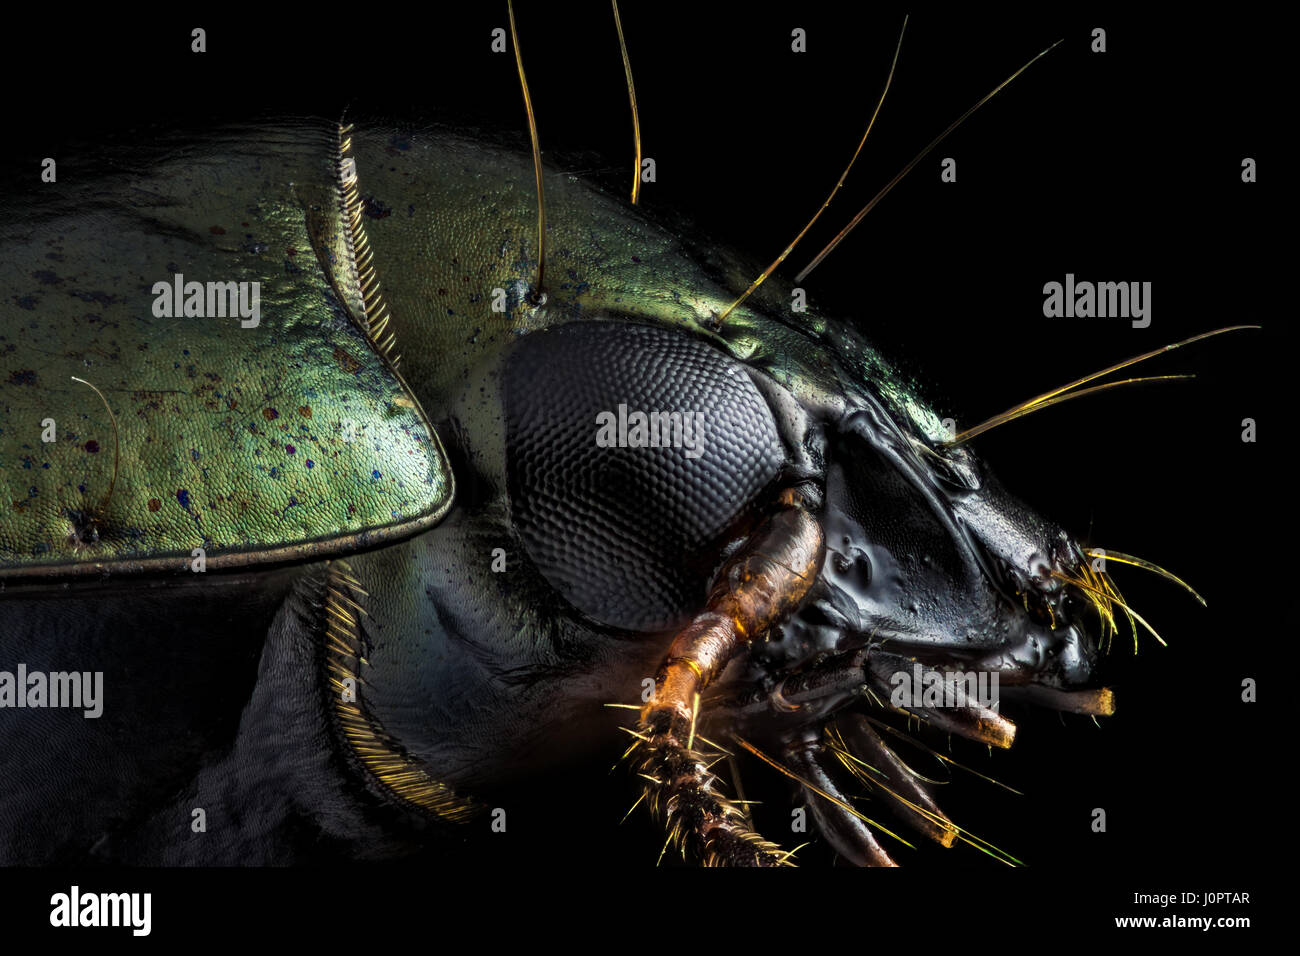 Macro extrême - portrait de profil d'un scarabée vert photographié à l'aide d'un microscope à grossissement x10. Banque D'Images